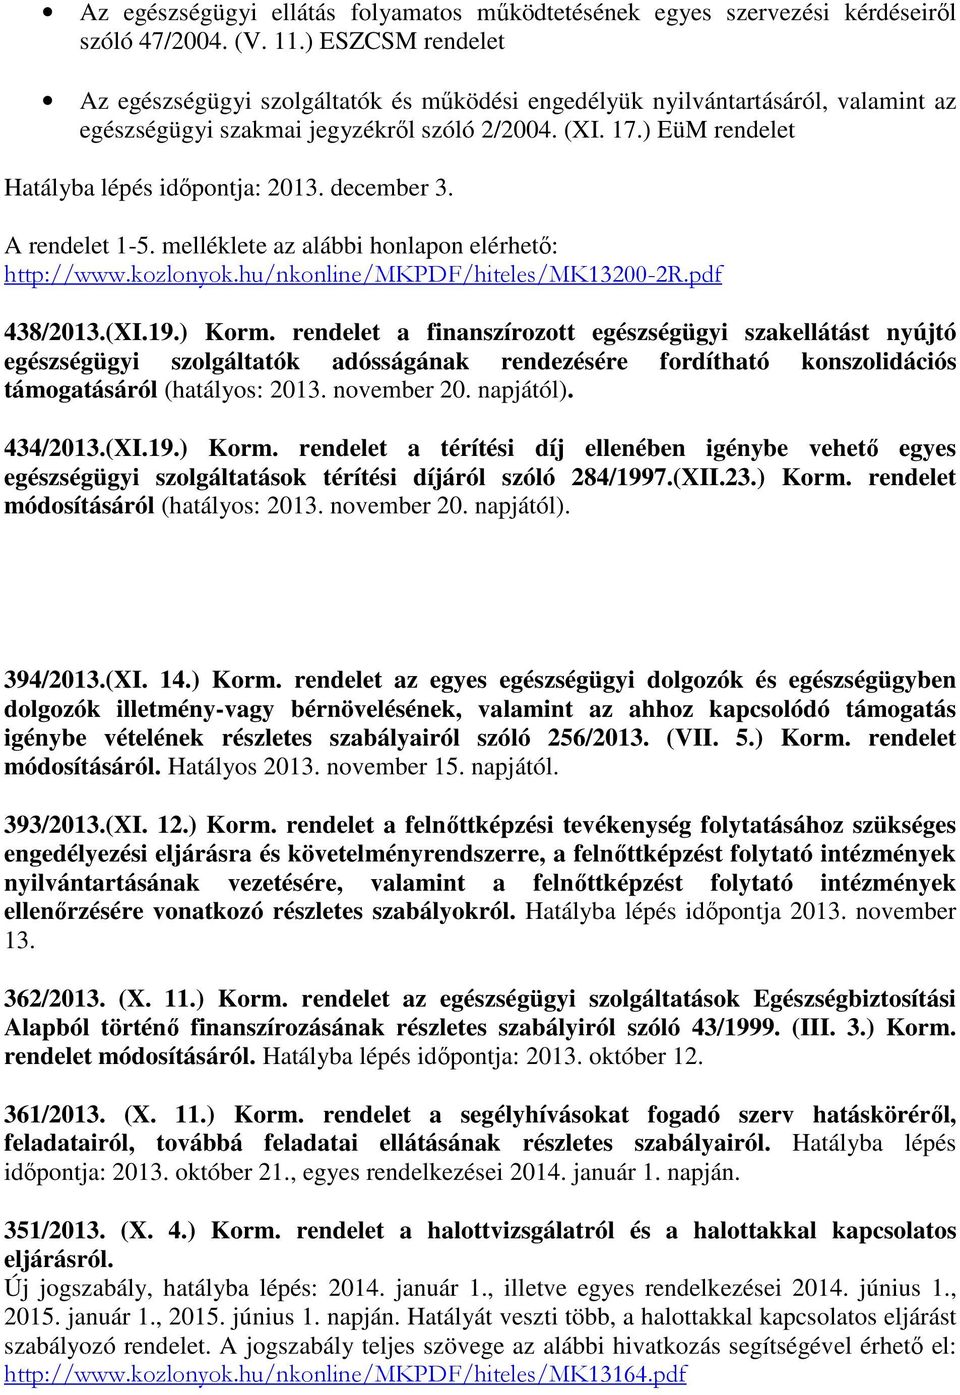 ) EüM rendelet Hatályba lépés időpontja: 2013. december 3. A rendelet 1-5. melléklete az alábbi honlapon elérhető: http://www.kozlonyok.hu/nkonline/mkpdf/hiteles/mk13200-2r.pdf 438/2013.(XI.19.) Korm.